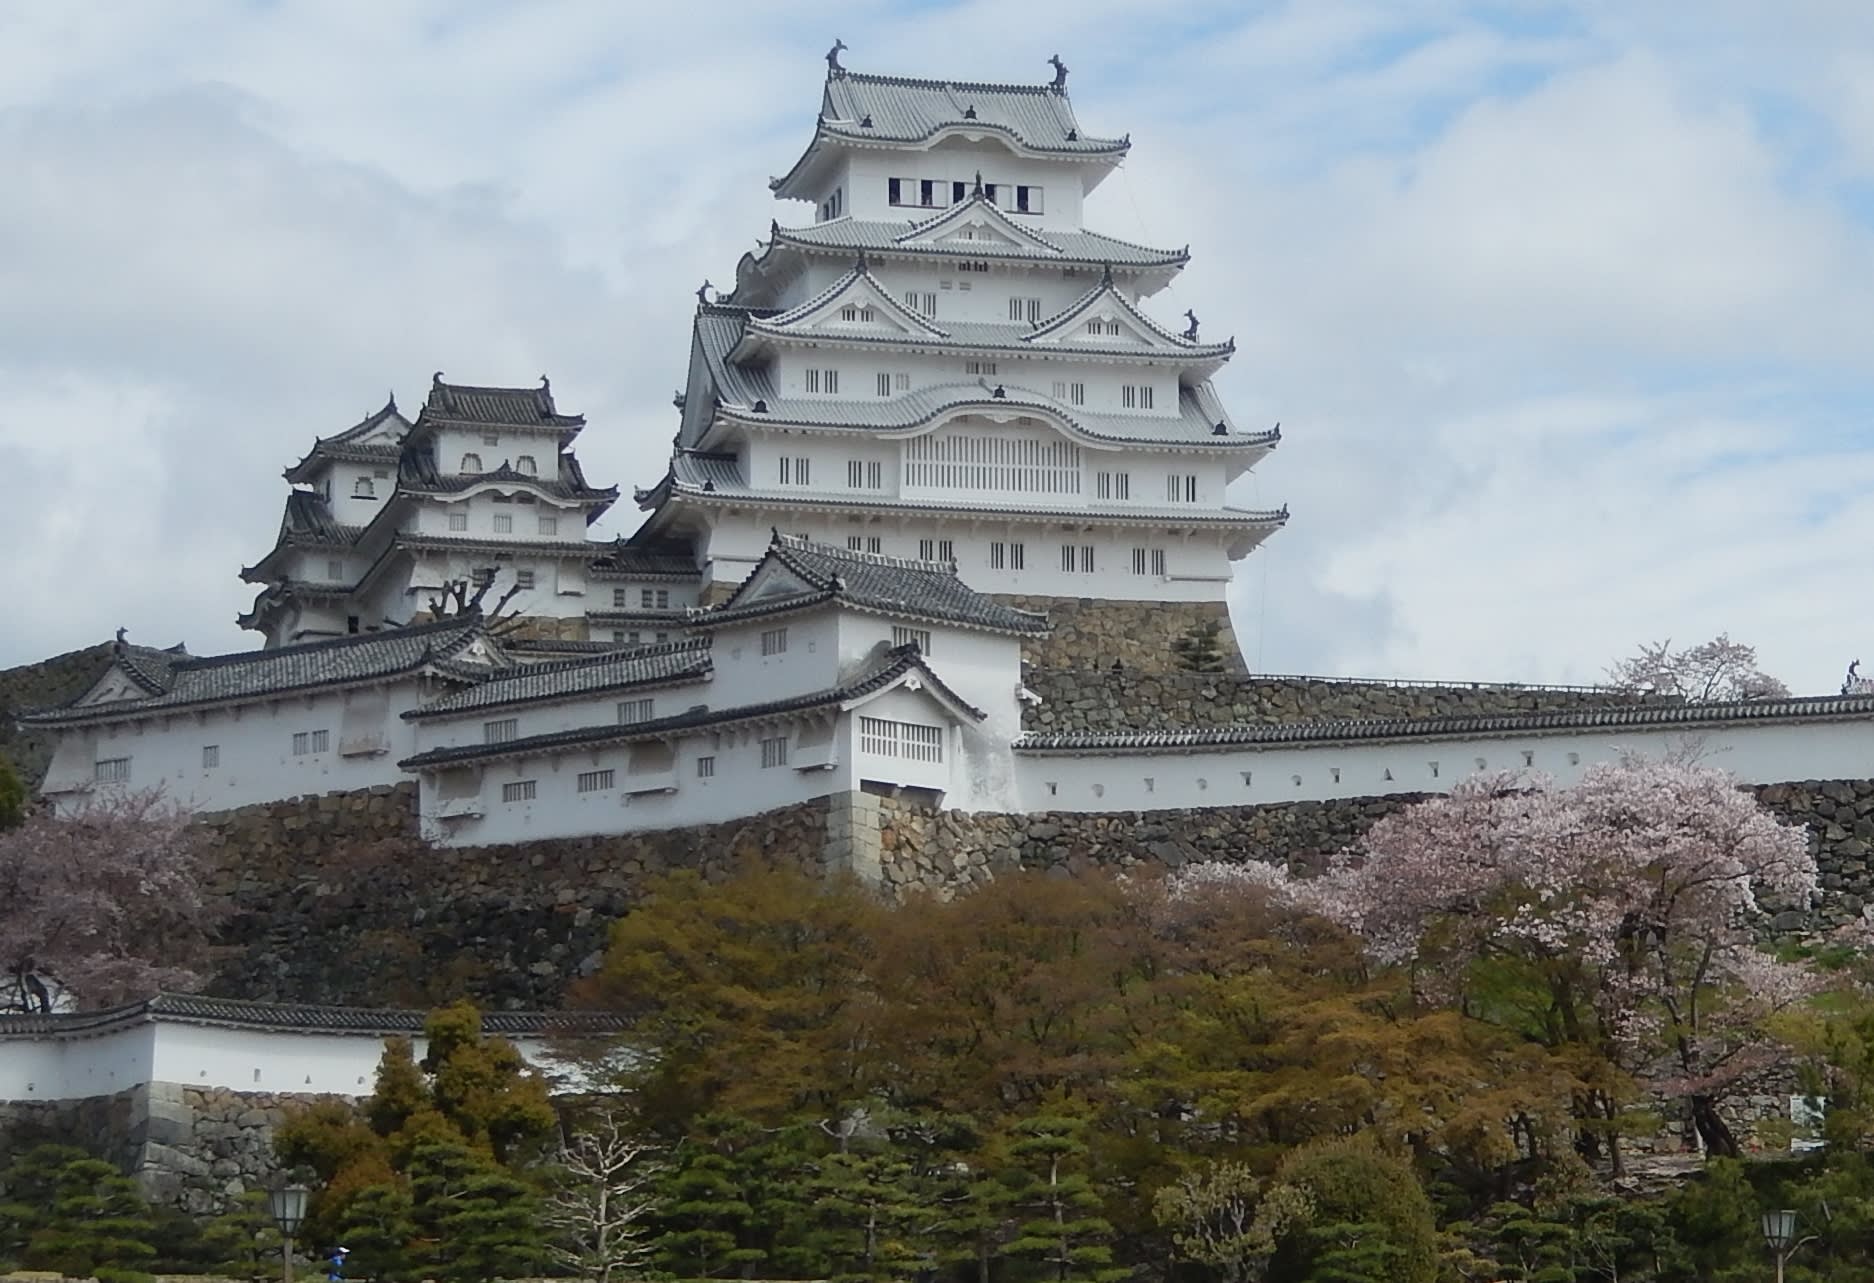 対照的な姫路城と竹田城を訪ねて 行雲流水